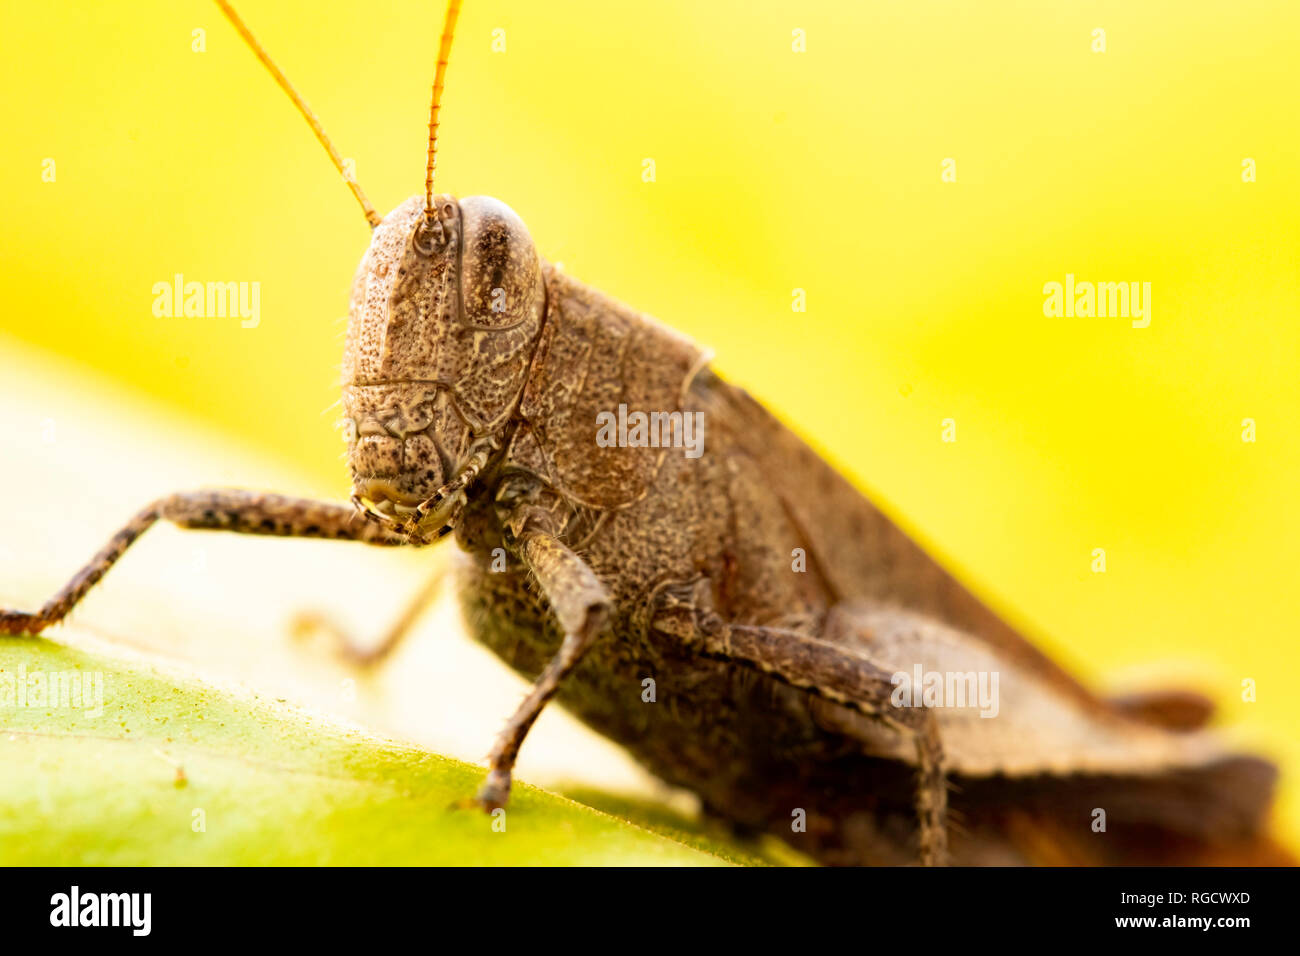 Macro photo révèle le monde complexe d'une sauterelle tôt le matin, mettant en valeur la beauté captivante de la photographie d'insectes. Banque D'Images